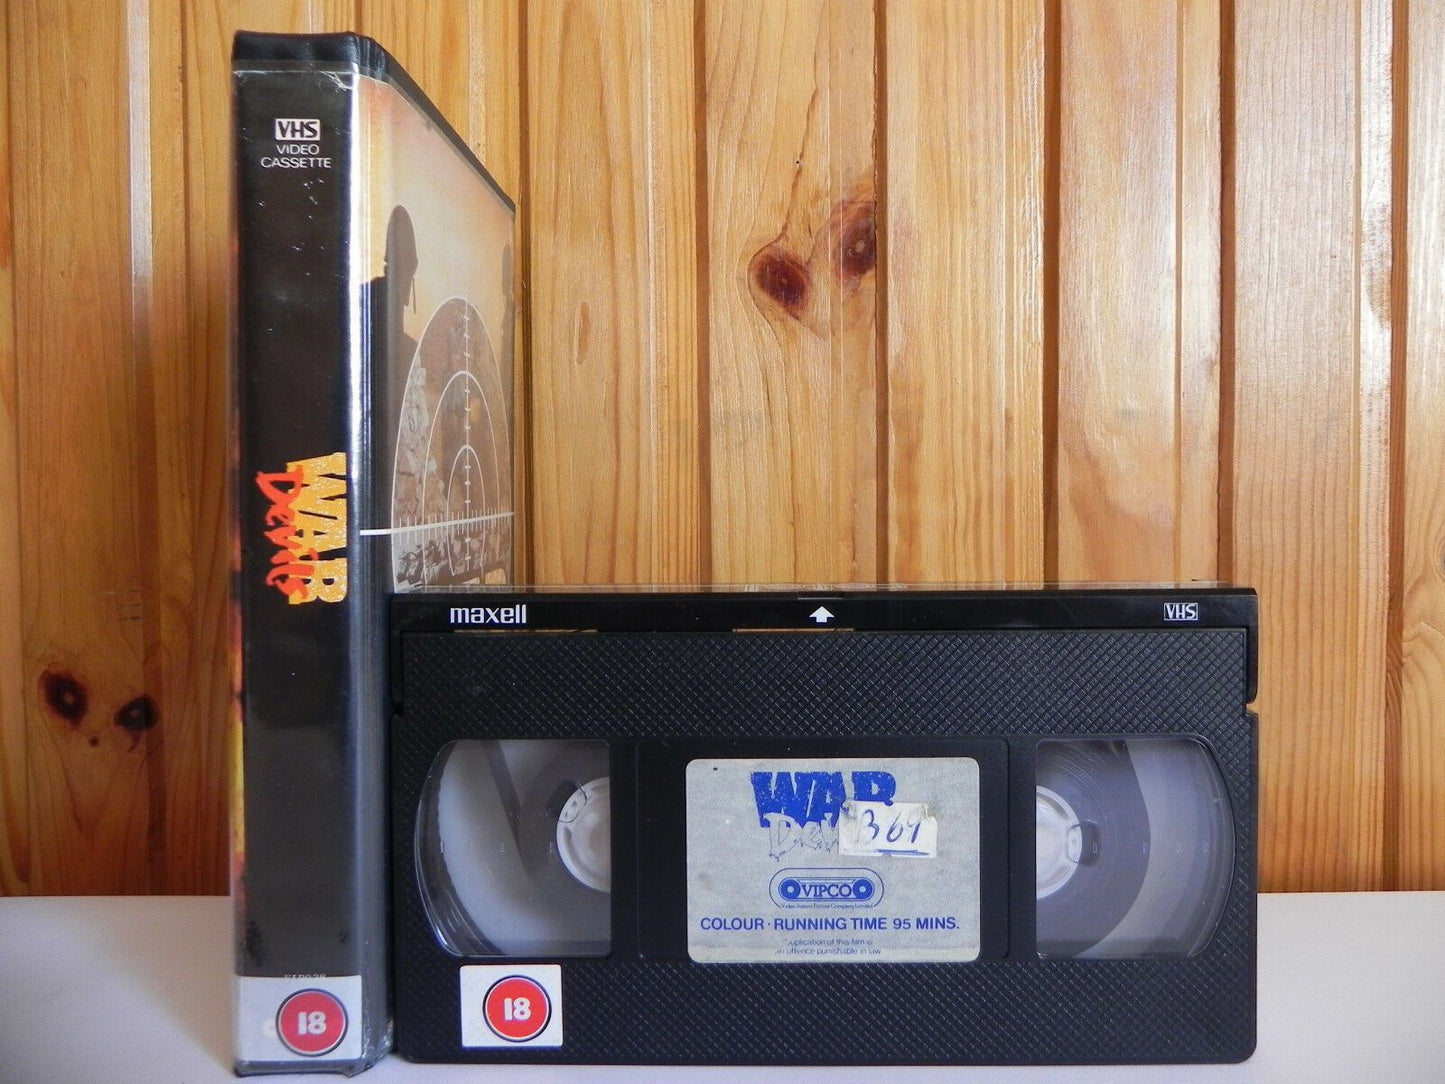 War Devils - Action - Guy Madison - Pre-Cert - Ex-Rental - Large Box - Pal VHS-